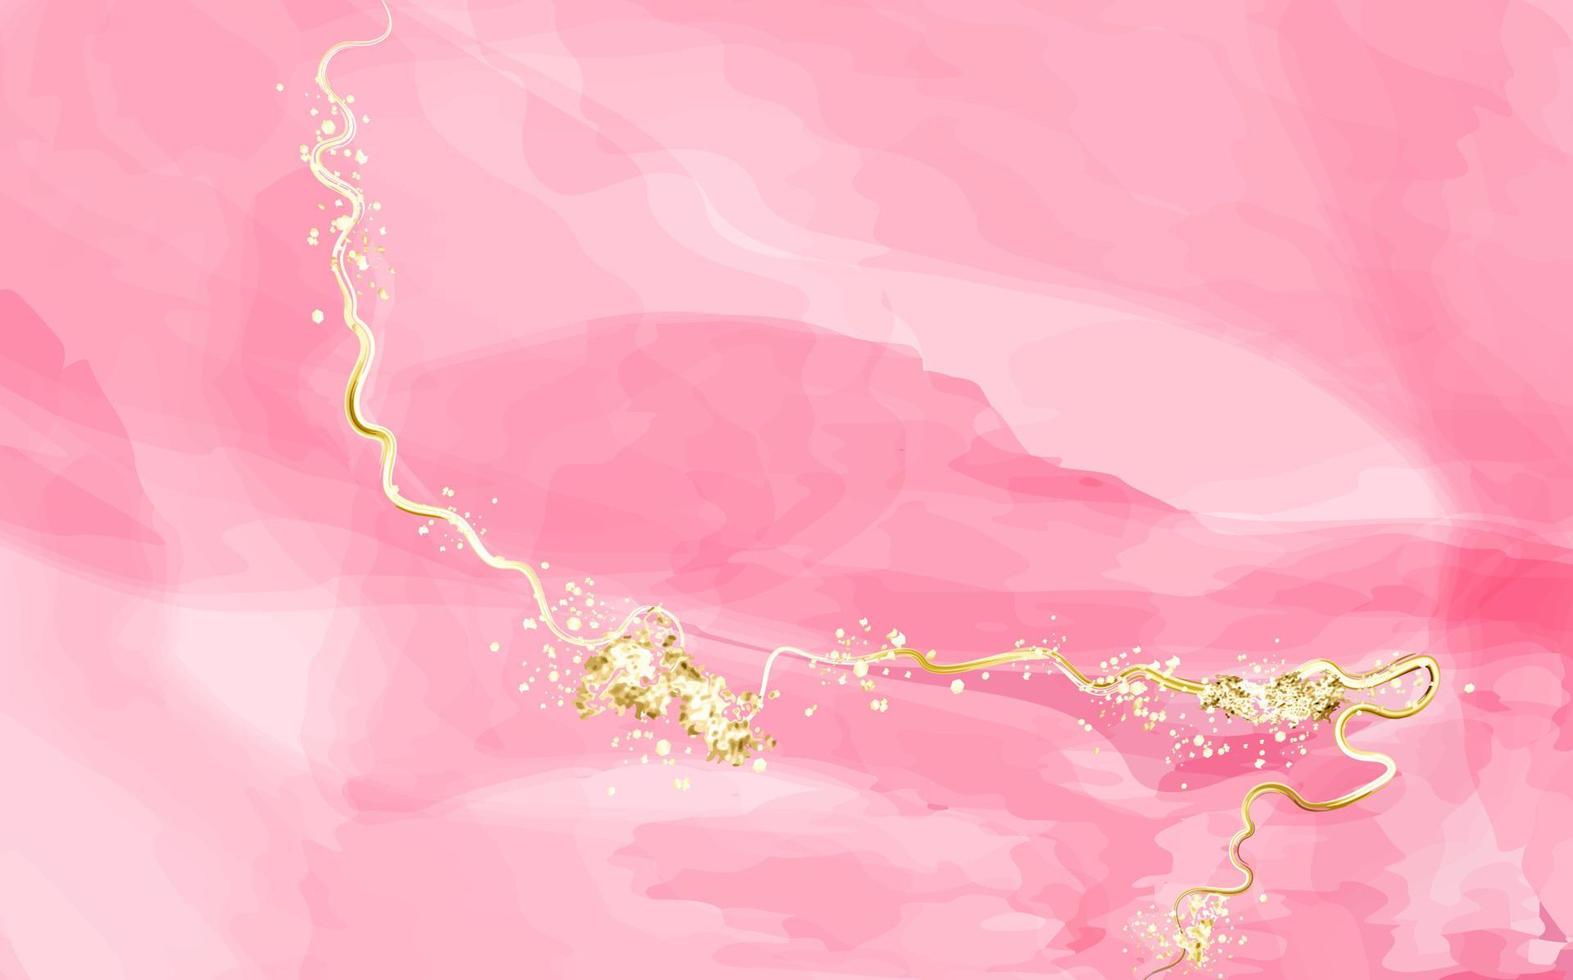 abstracte roze of abrikoos aquarel achtergrond met gouden texture.blush vloeistof schilderij. lente bruiloft uitnodiging stoffige roos of sluier textuur. alcoholische inkt. vector